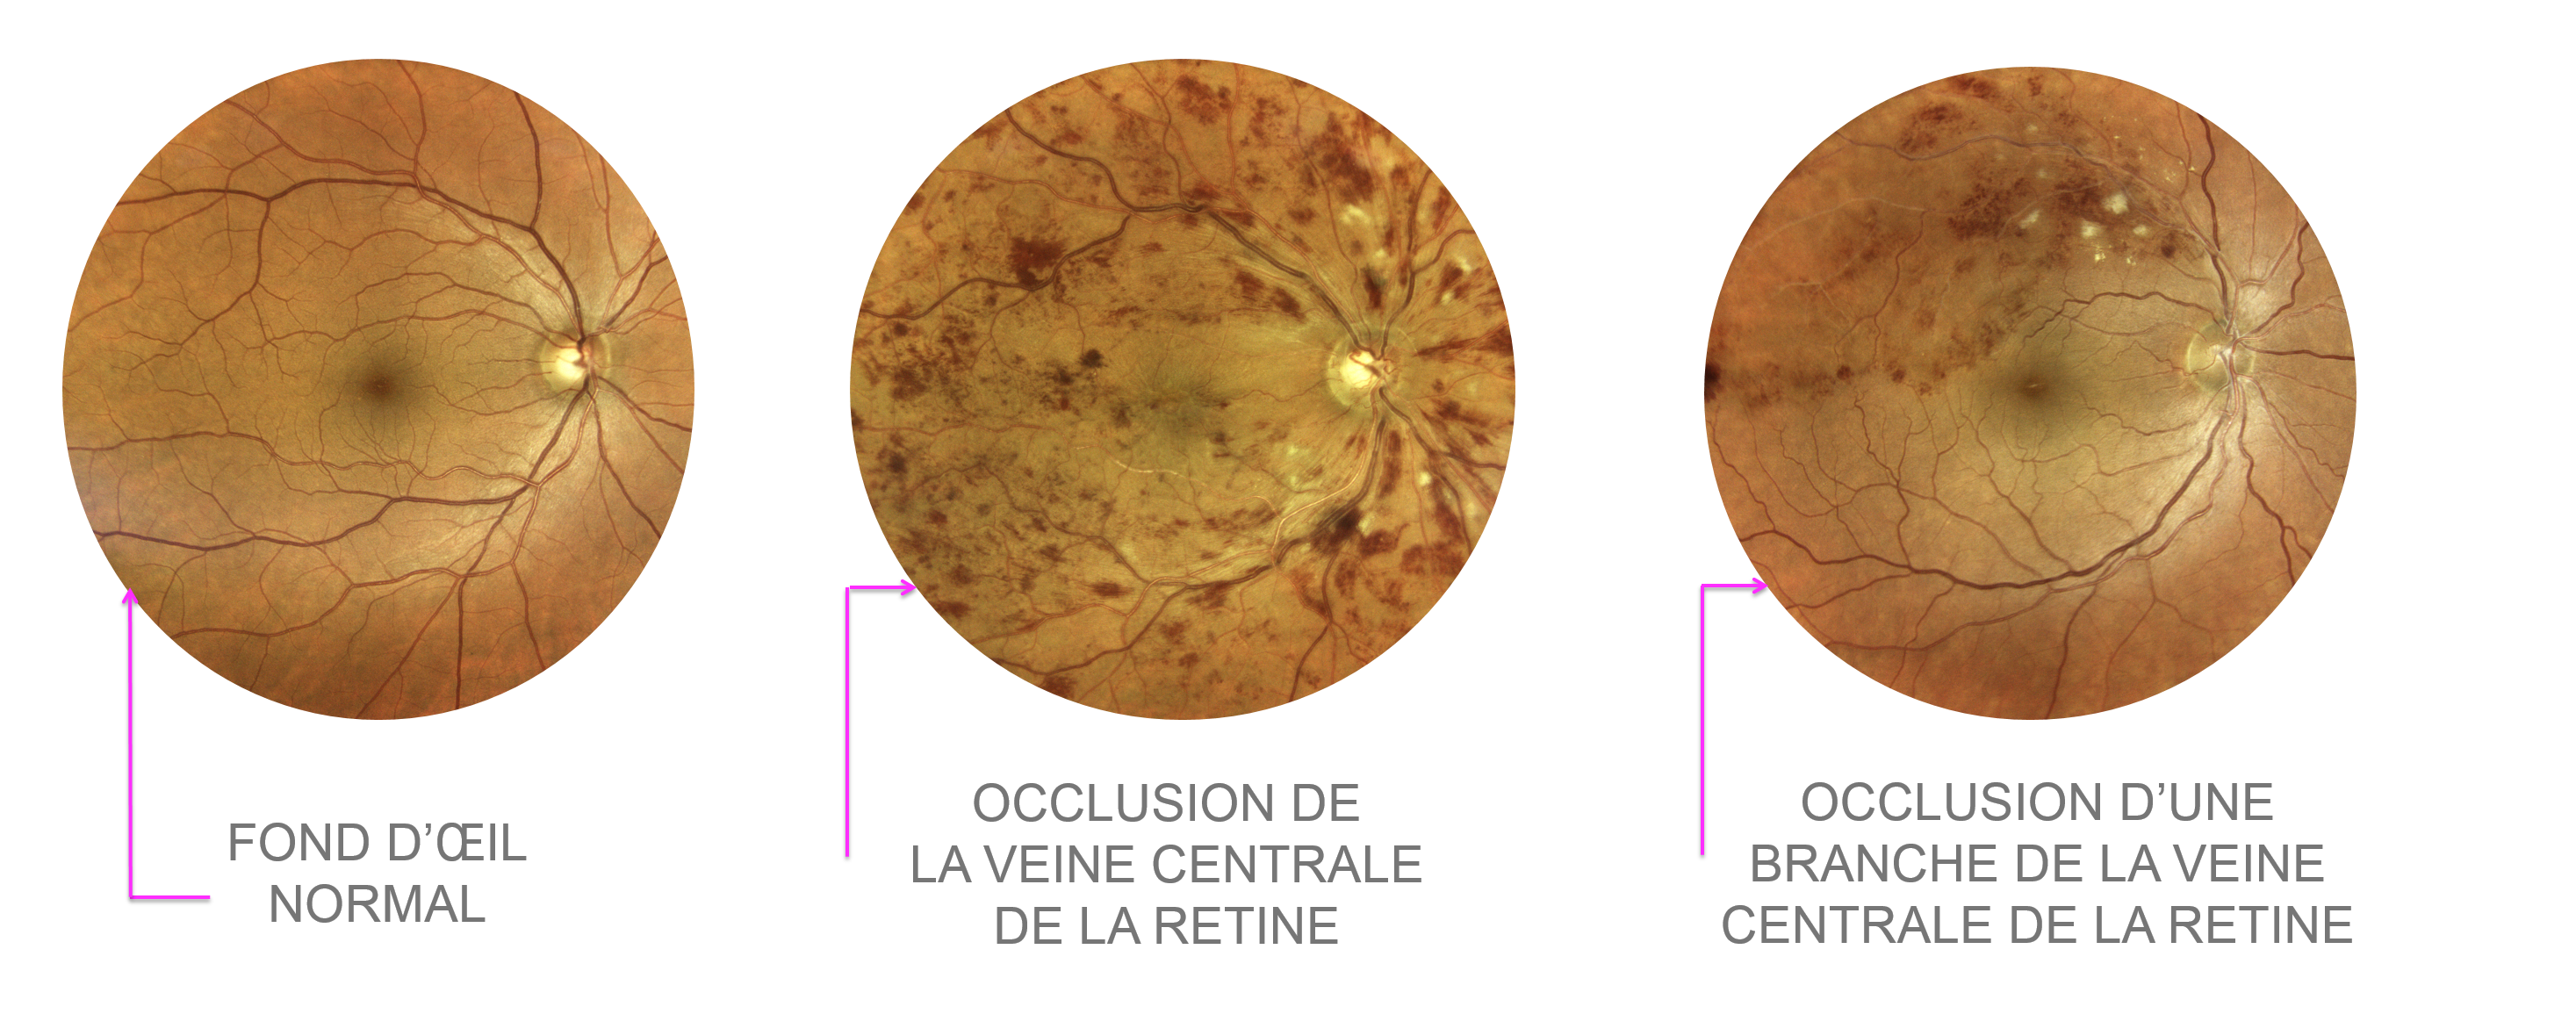 image de fond d'oeil normal, occlusion de veine centrale de la rétine (OVCR) et occlusion de branche de veine centrale de la rétine (OBVCR ou OBVR) 